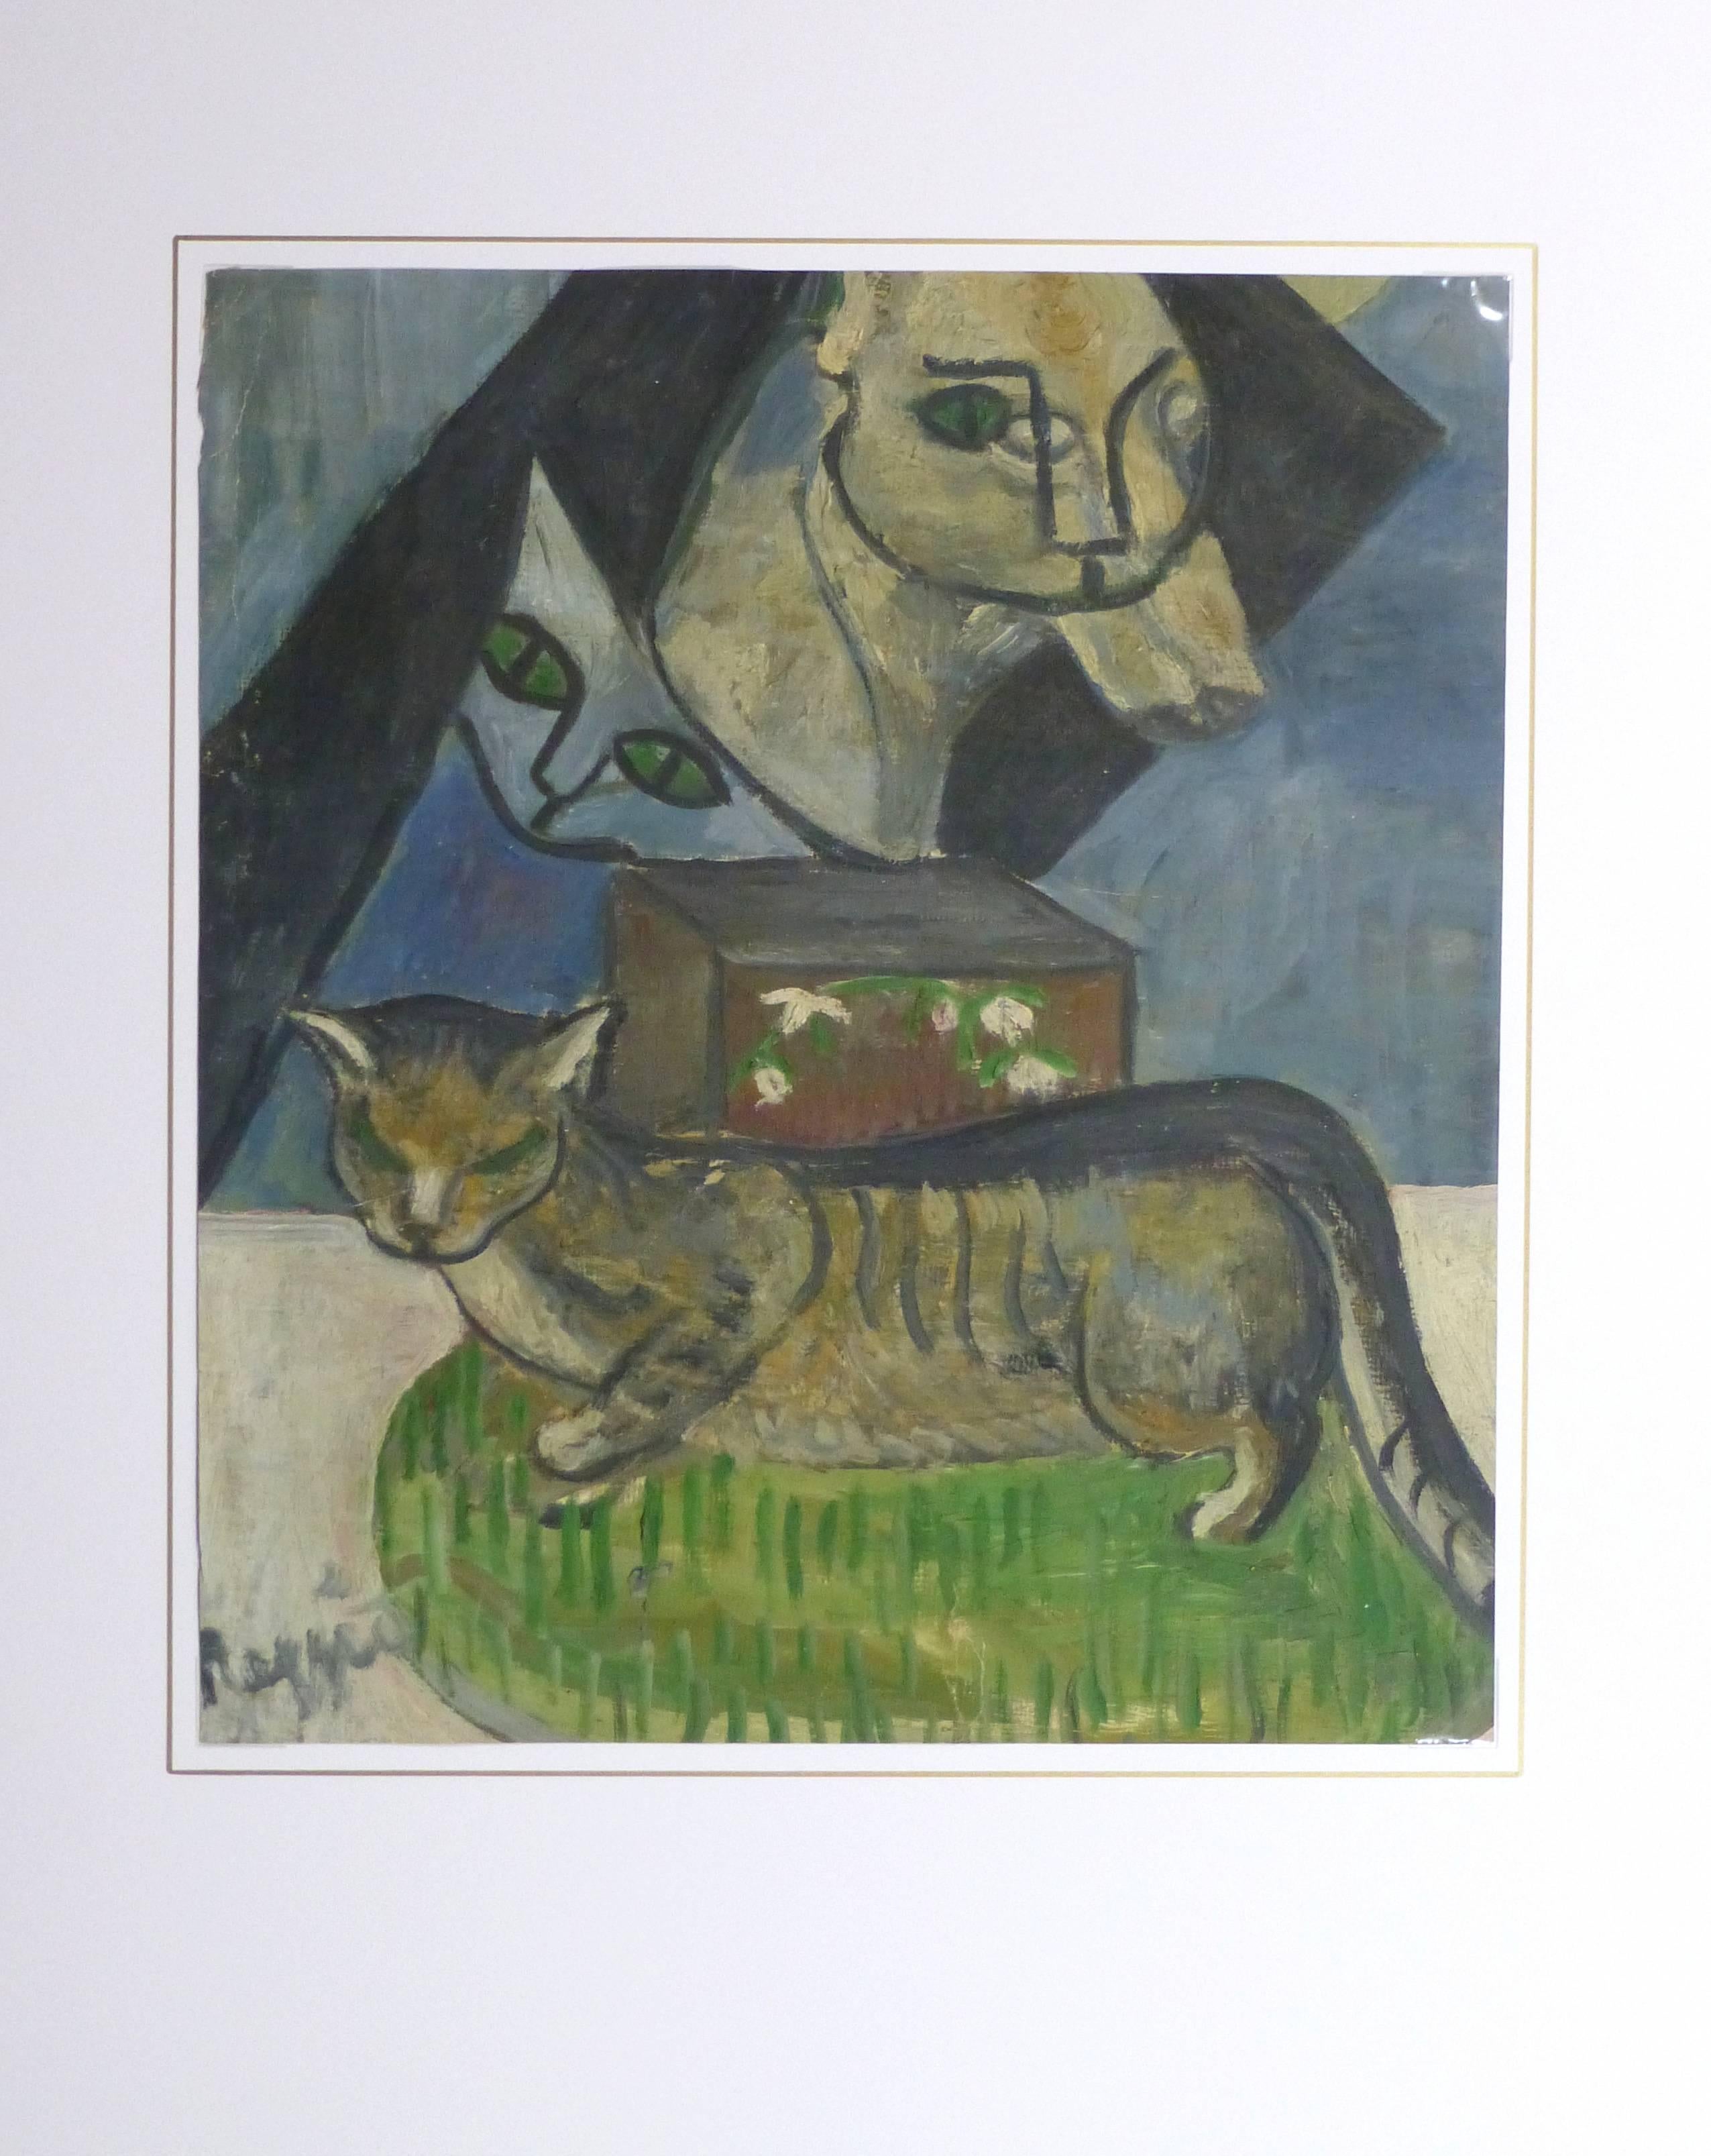 Skurriles Ölgemälde auf Papier mit einer gestromten Katze, die auf einem Teppich ruht und von großen abstrakten Katzenformen umgeben ist, um 1940. Signiert unten links. 

Originalkunstwerk auf Papier auf einem weißen Passepartout mit Goldrand.